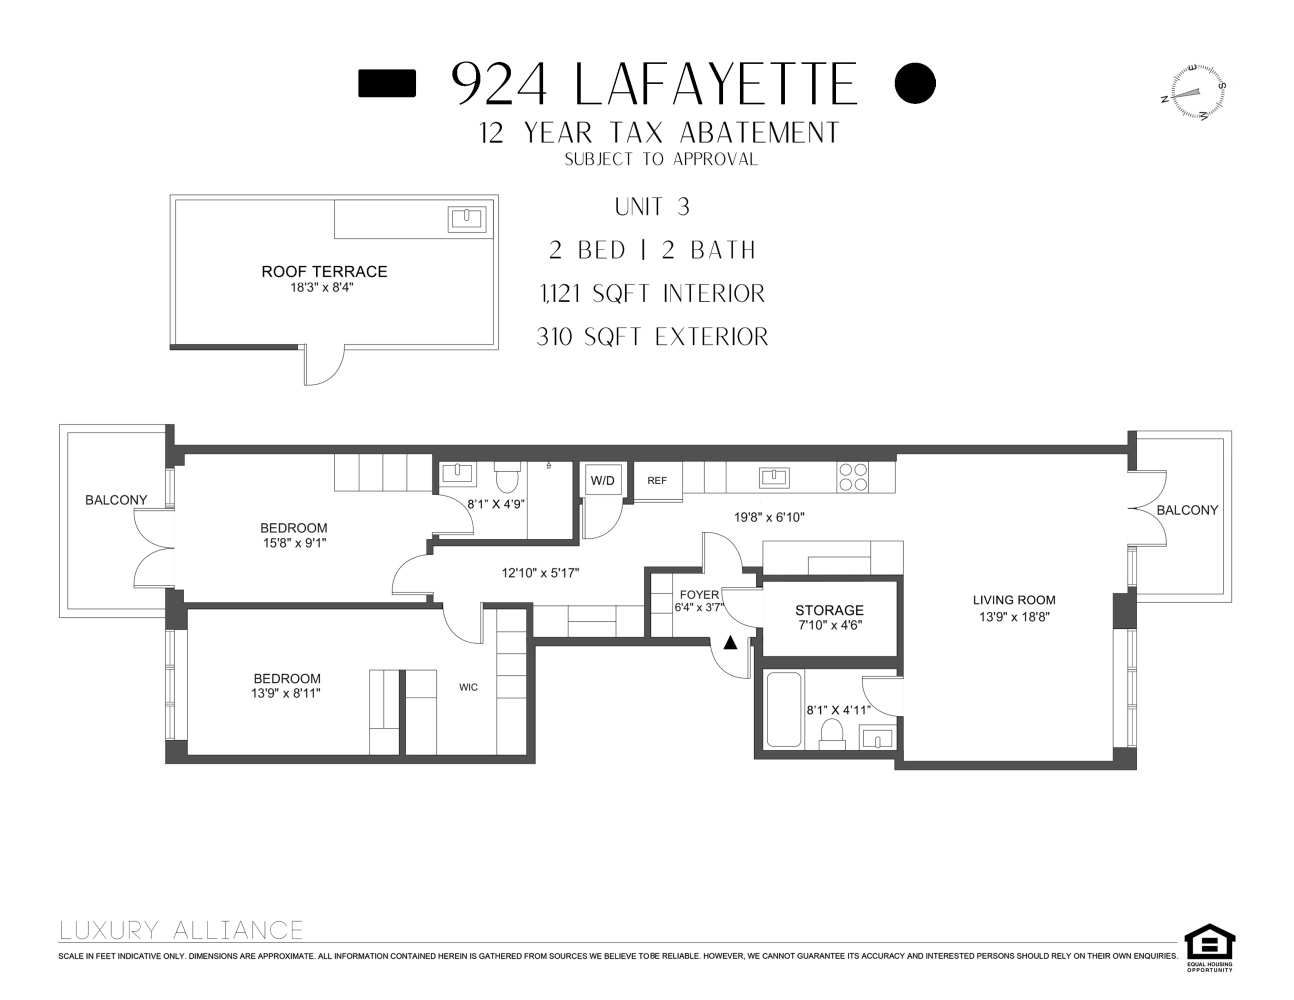 Floorplan for 924 Lafayette Avenue, 3